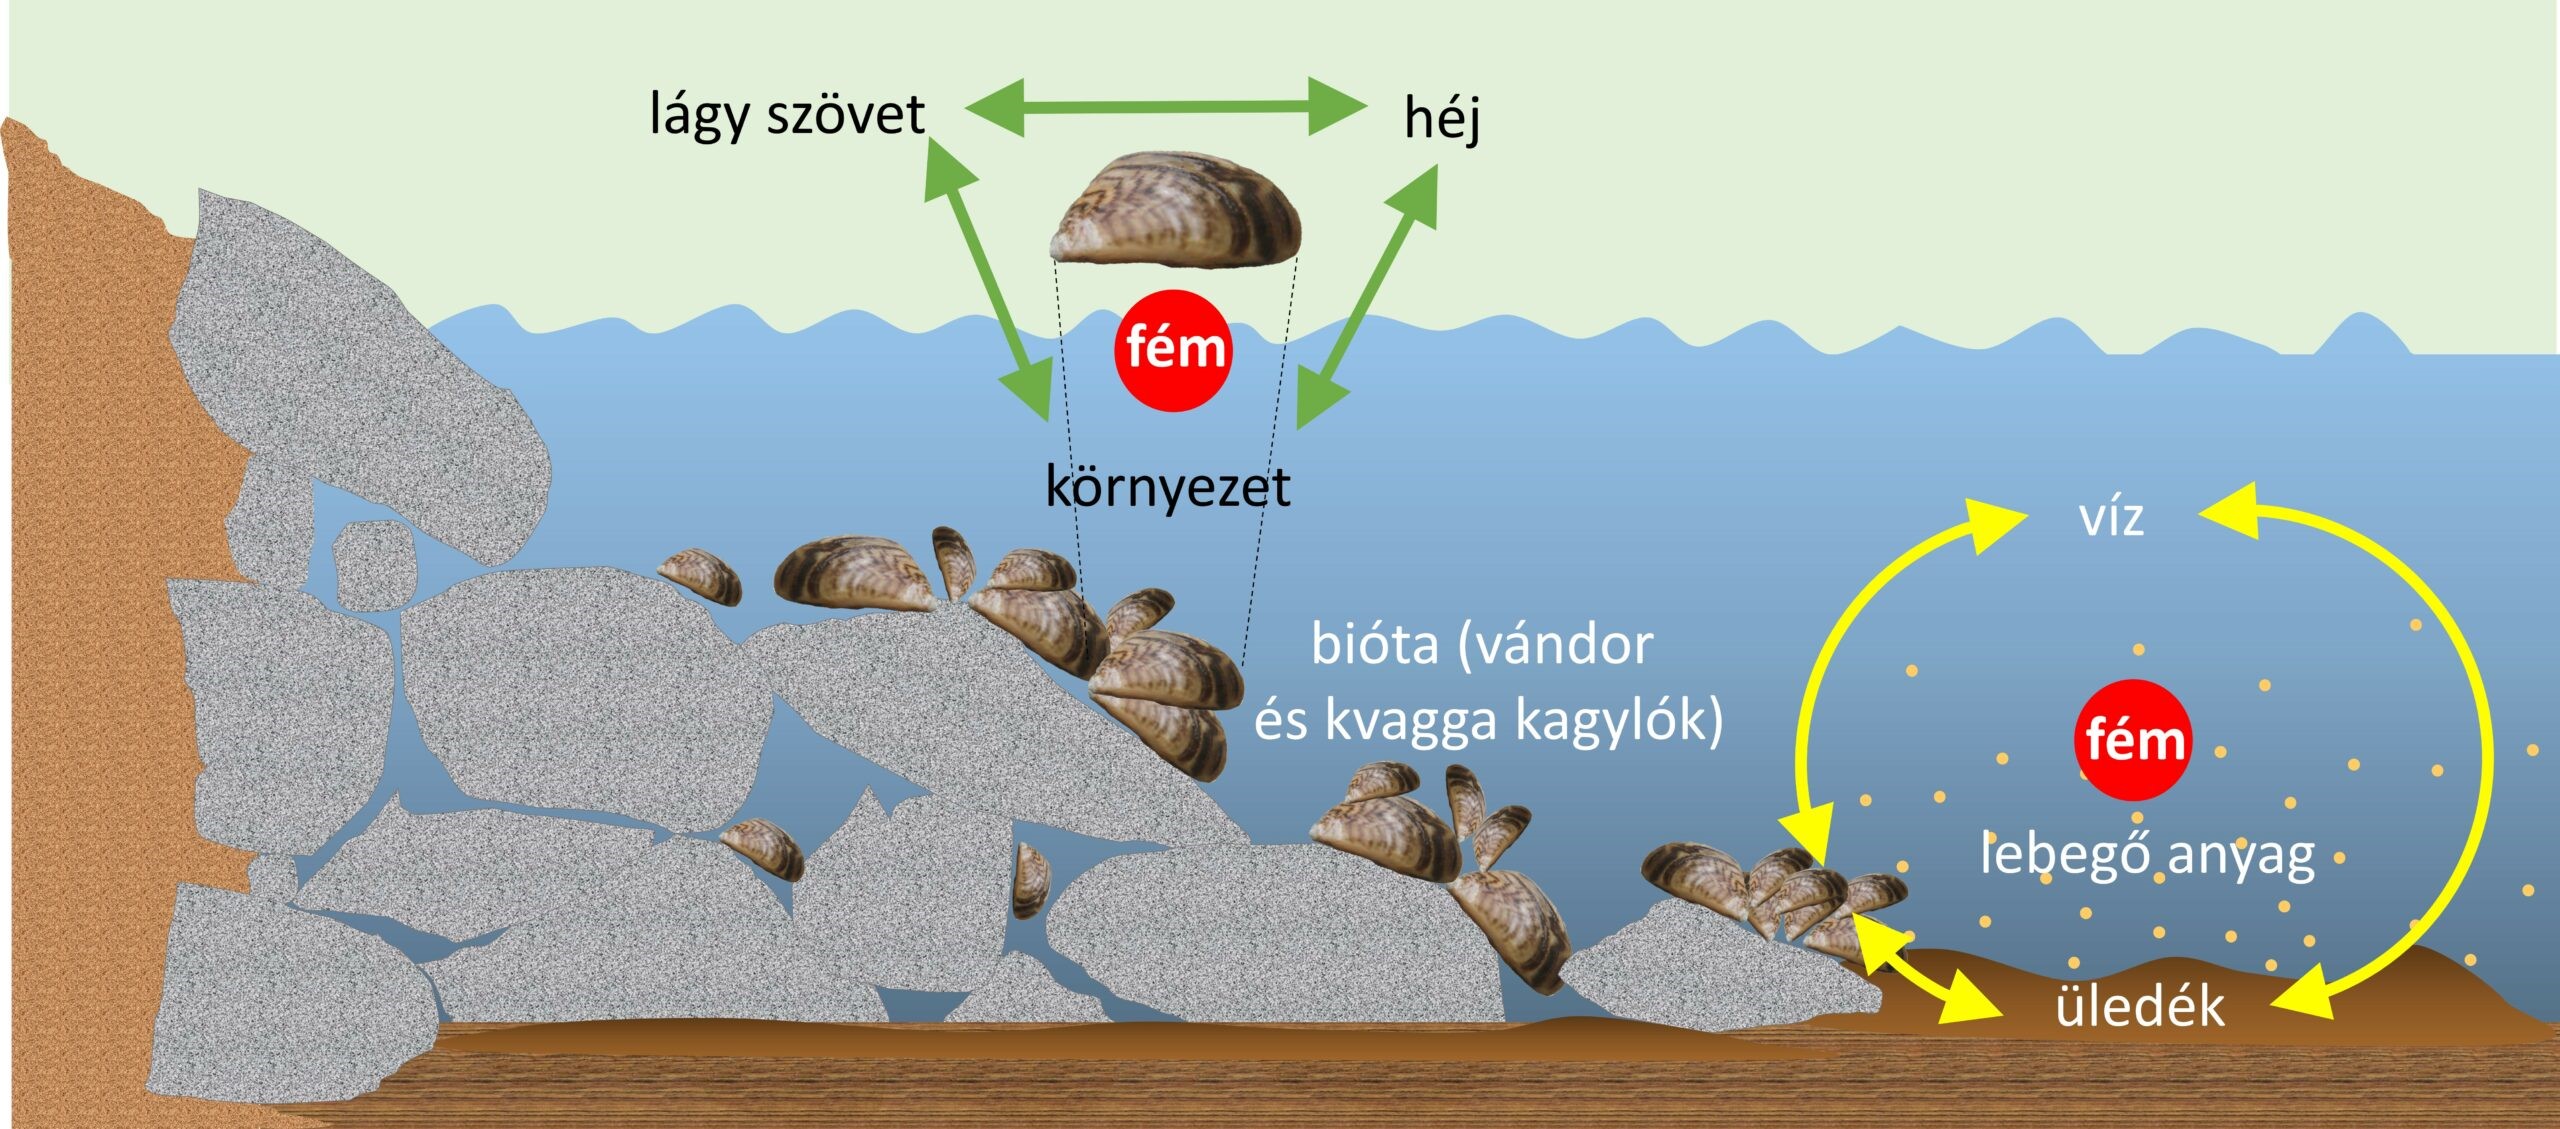 Érdekes kutatás látott napvilágot a balatoni kagylófajokról